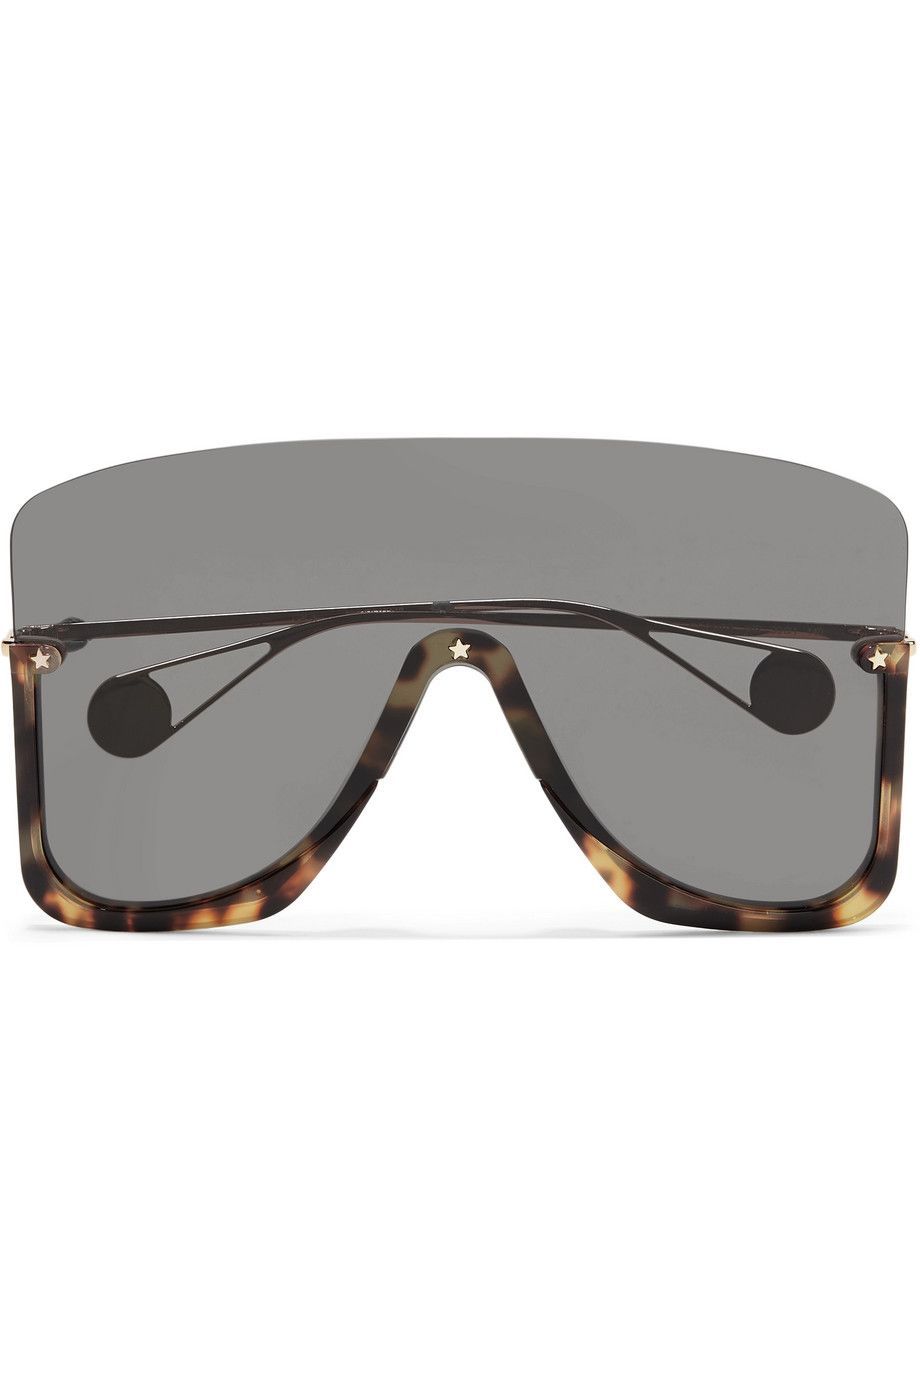 Tampil Beda, Ini Lho 6 Model Kacamata Unik yang Bisa Kamu Pilih